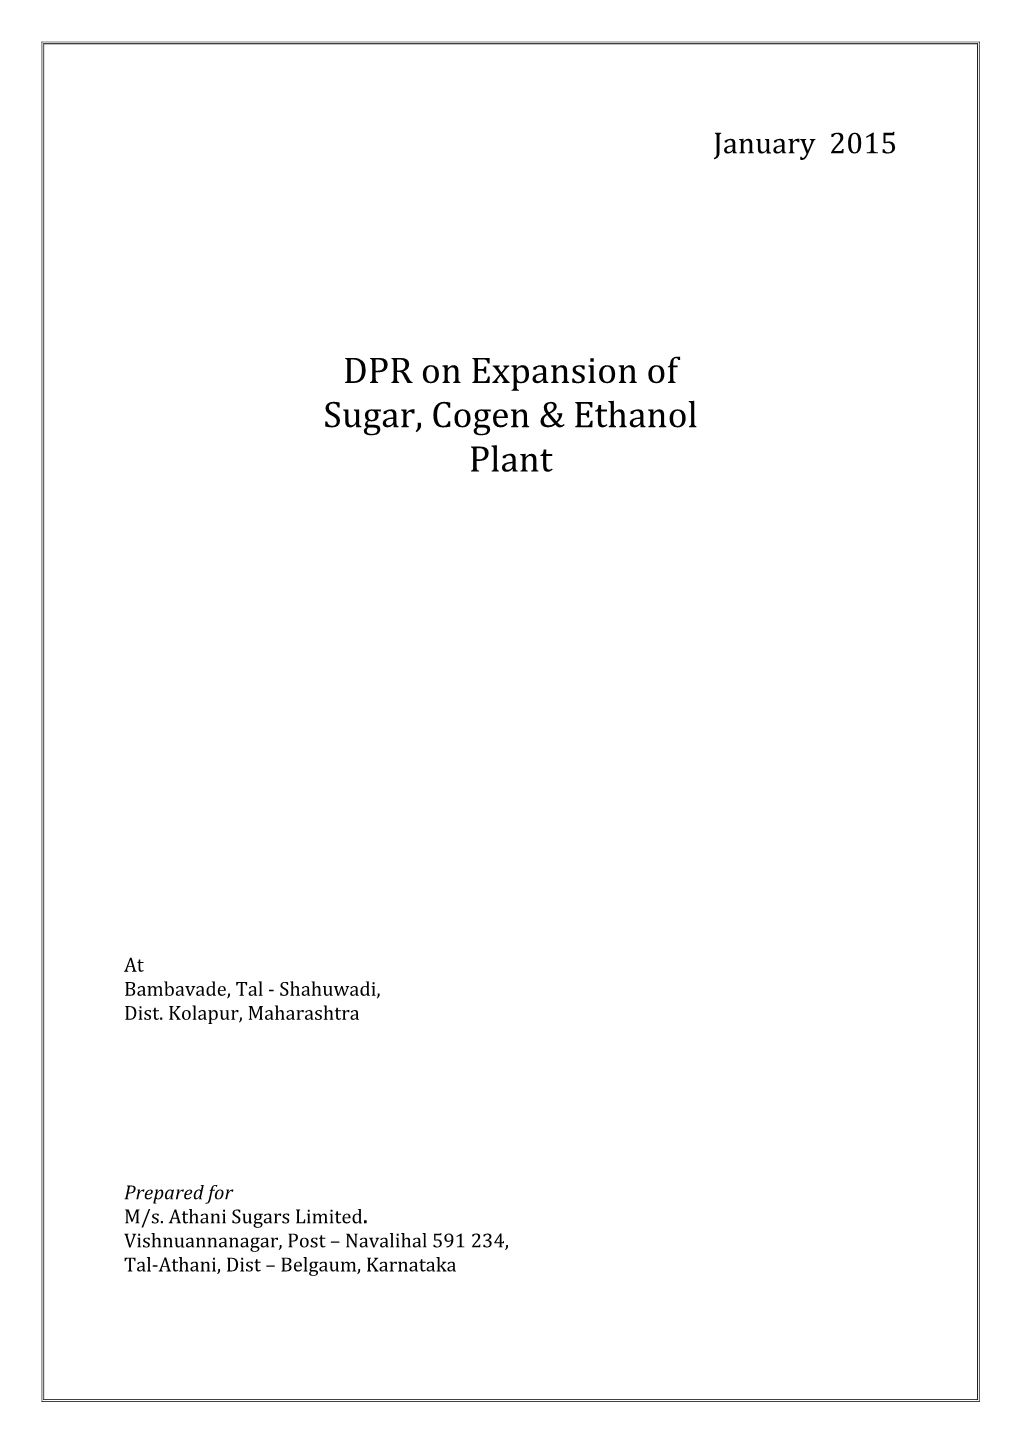 DPR on Expansion of Sugar, Cogen & Ethanol Plant